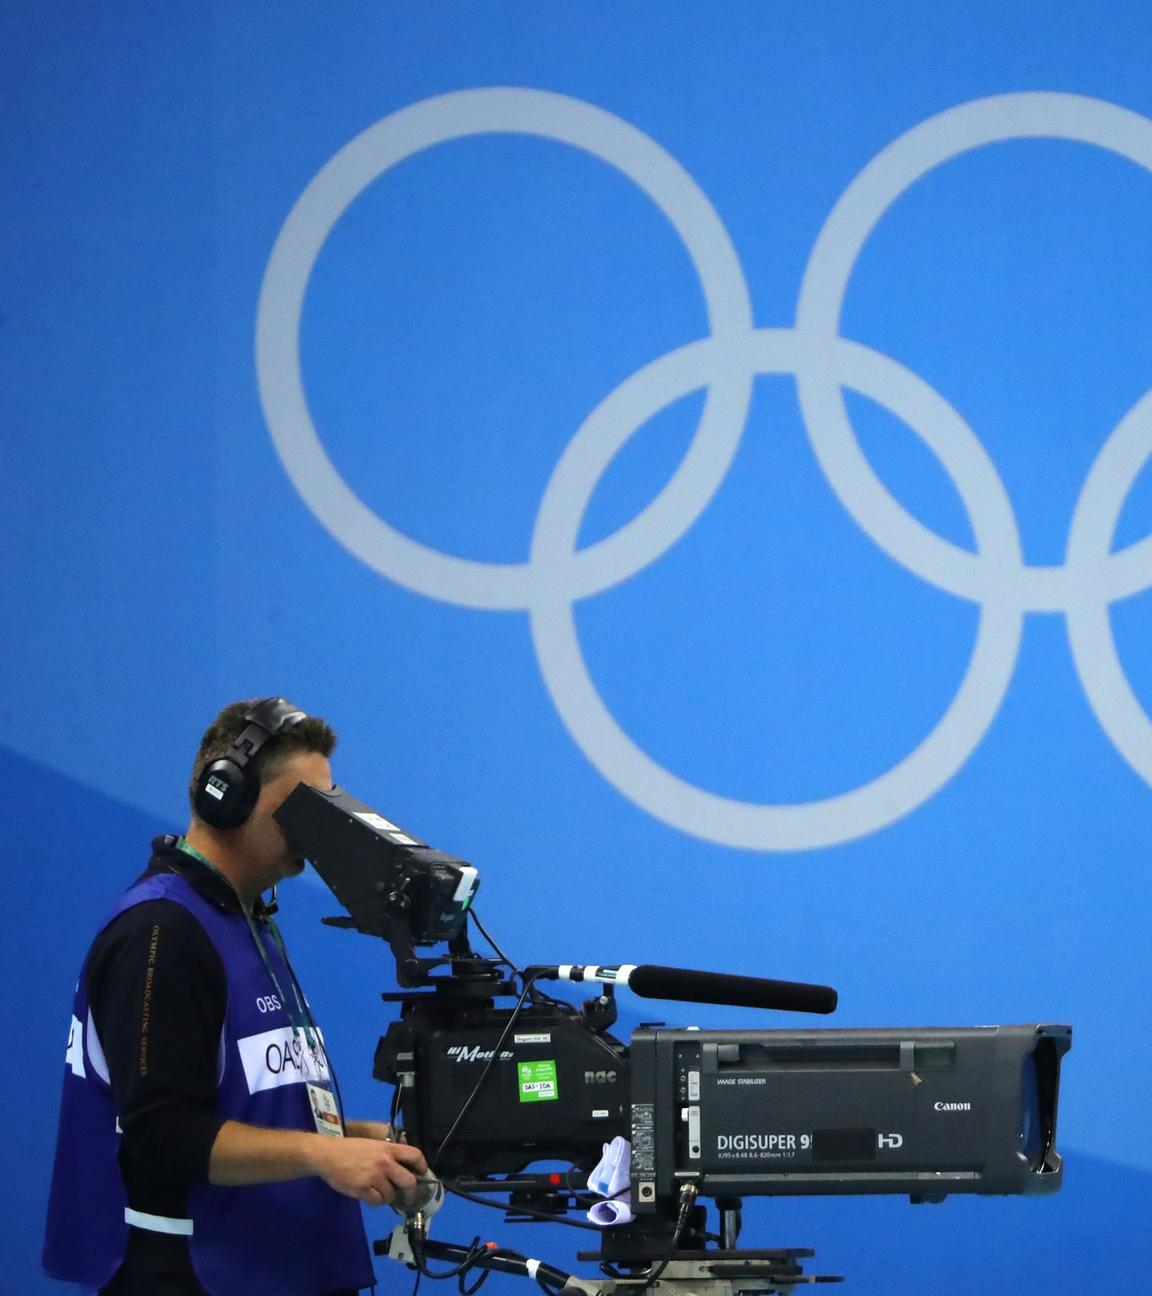 Kameramann bei den olympischen Spielen (2016)